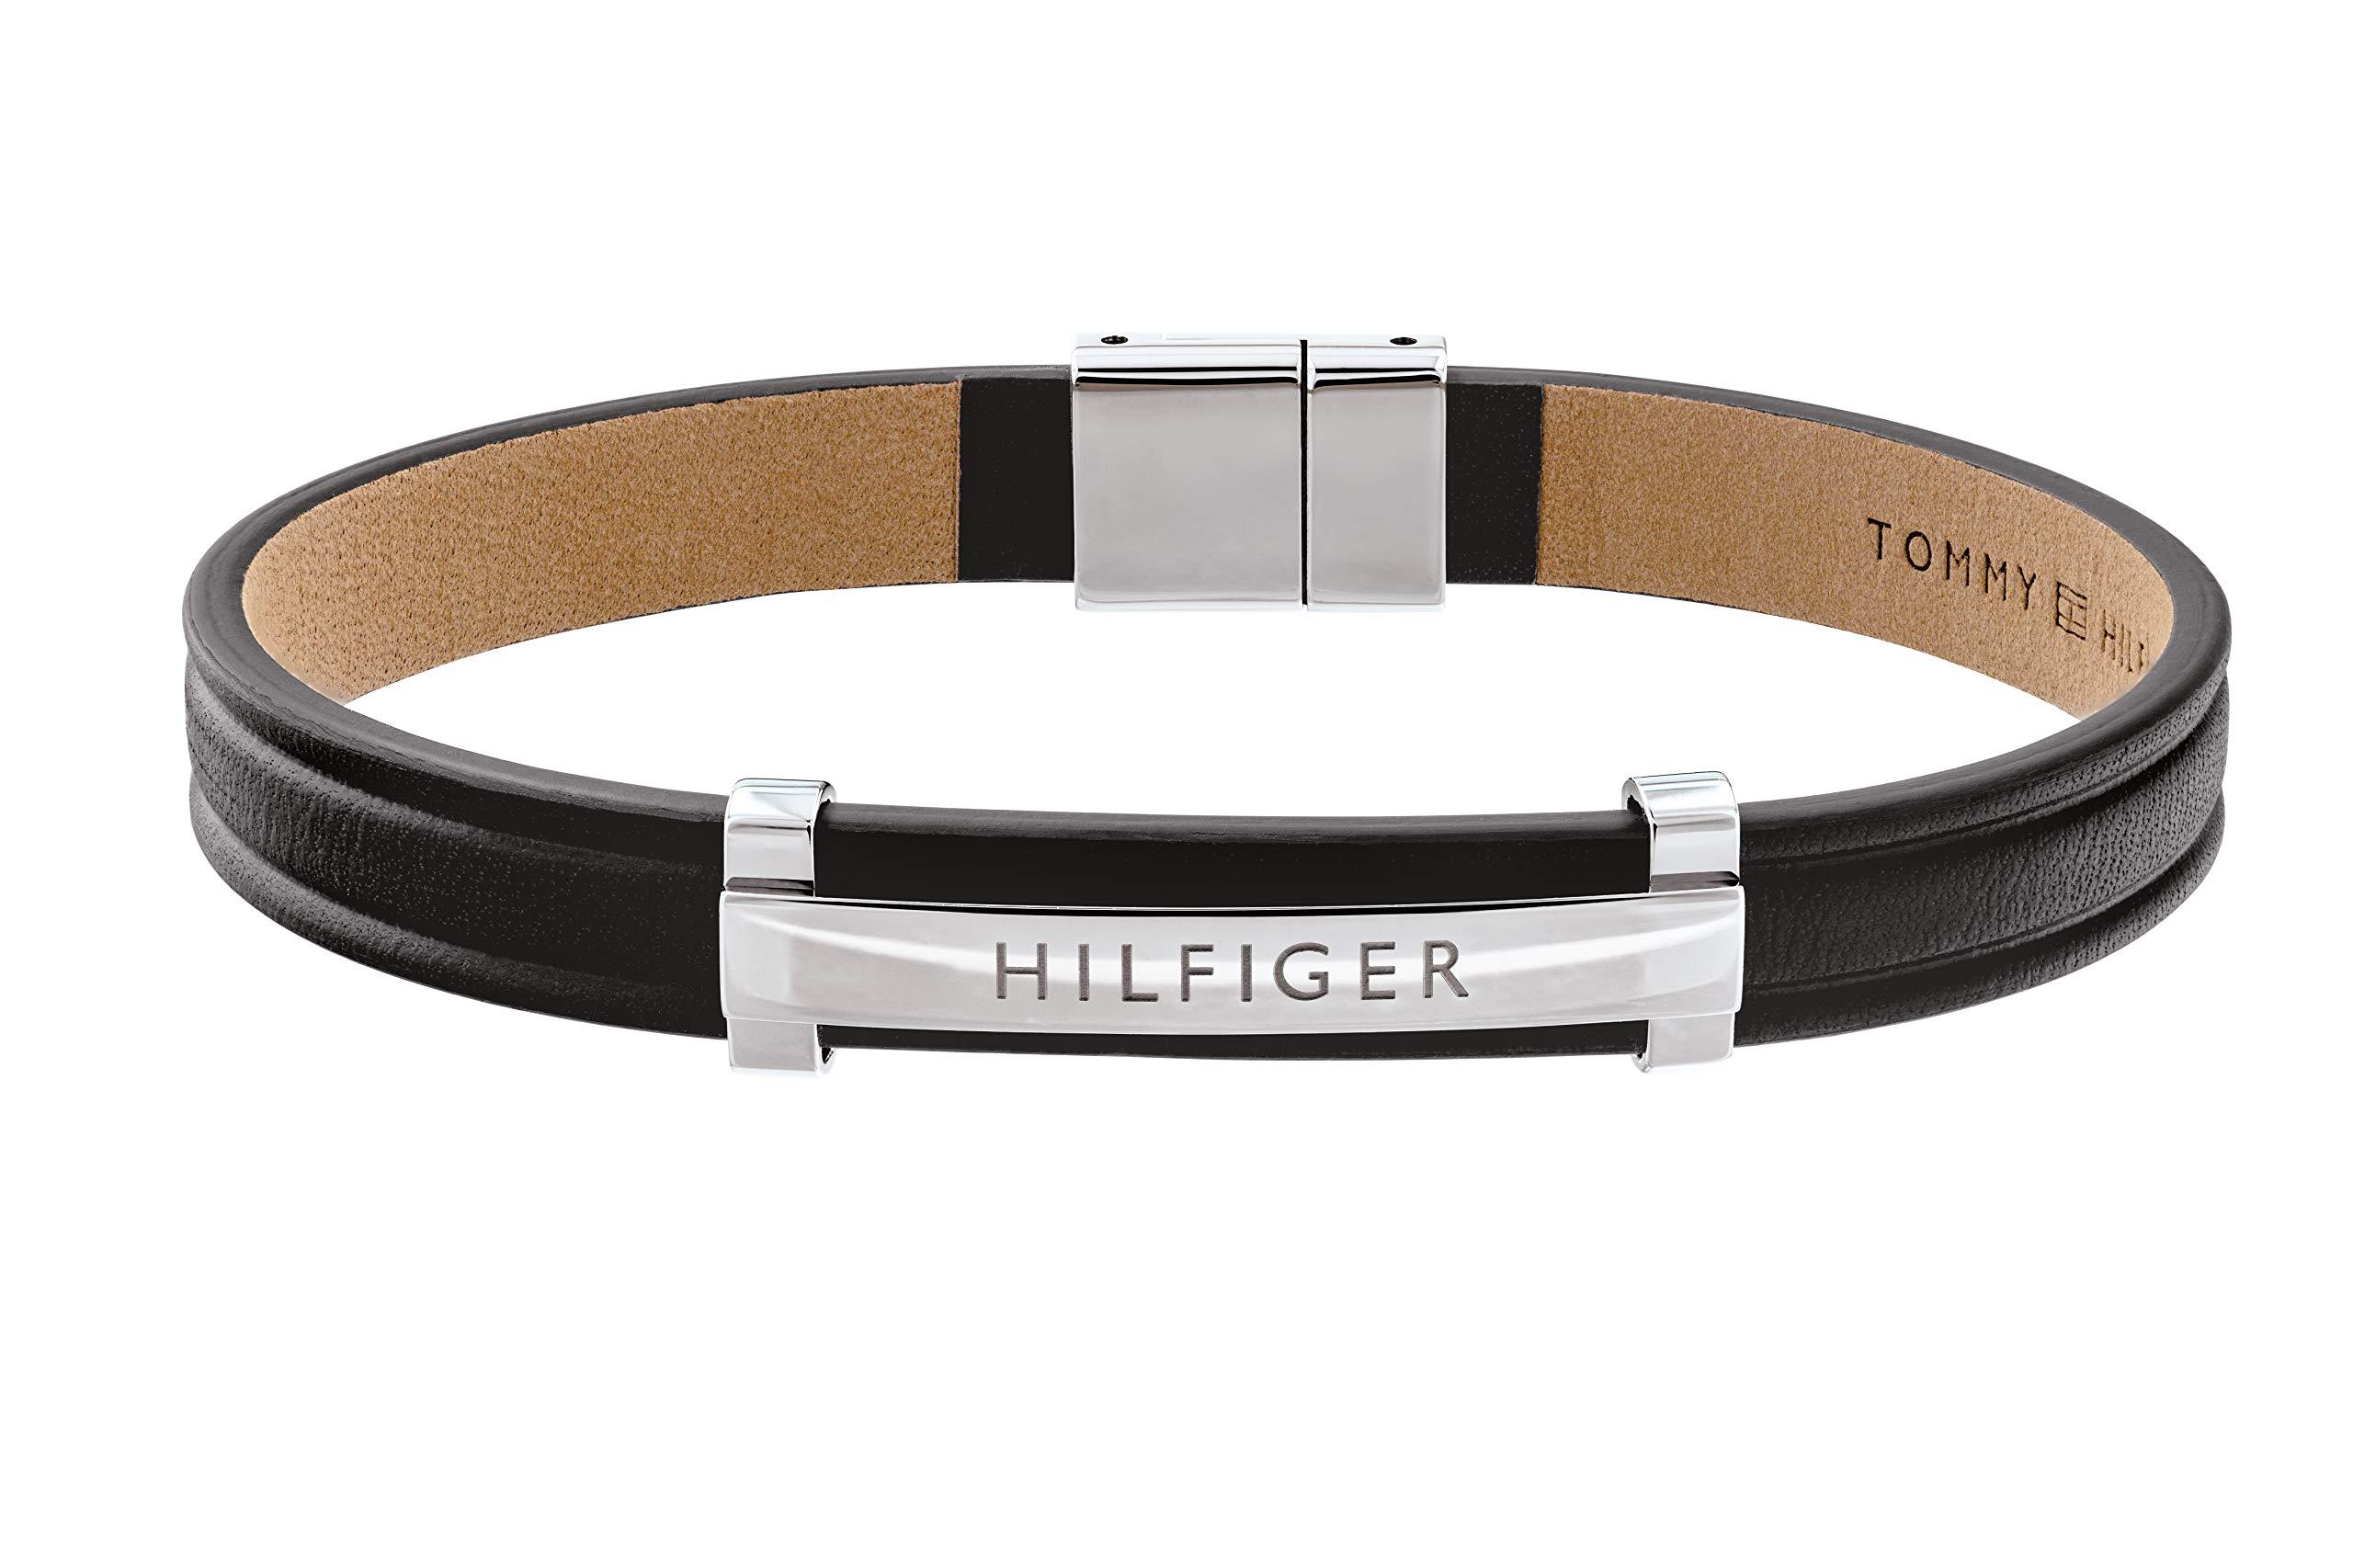 Tommy Hilfiger Jewelry Armband für aus Leder Schwarz - 2790161 in Schwarz  für Herren - Sparen Sie 20% | Lyst DE